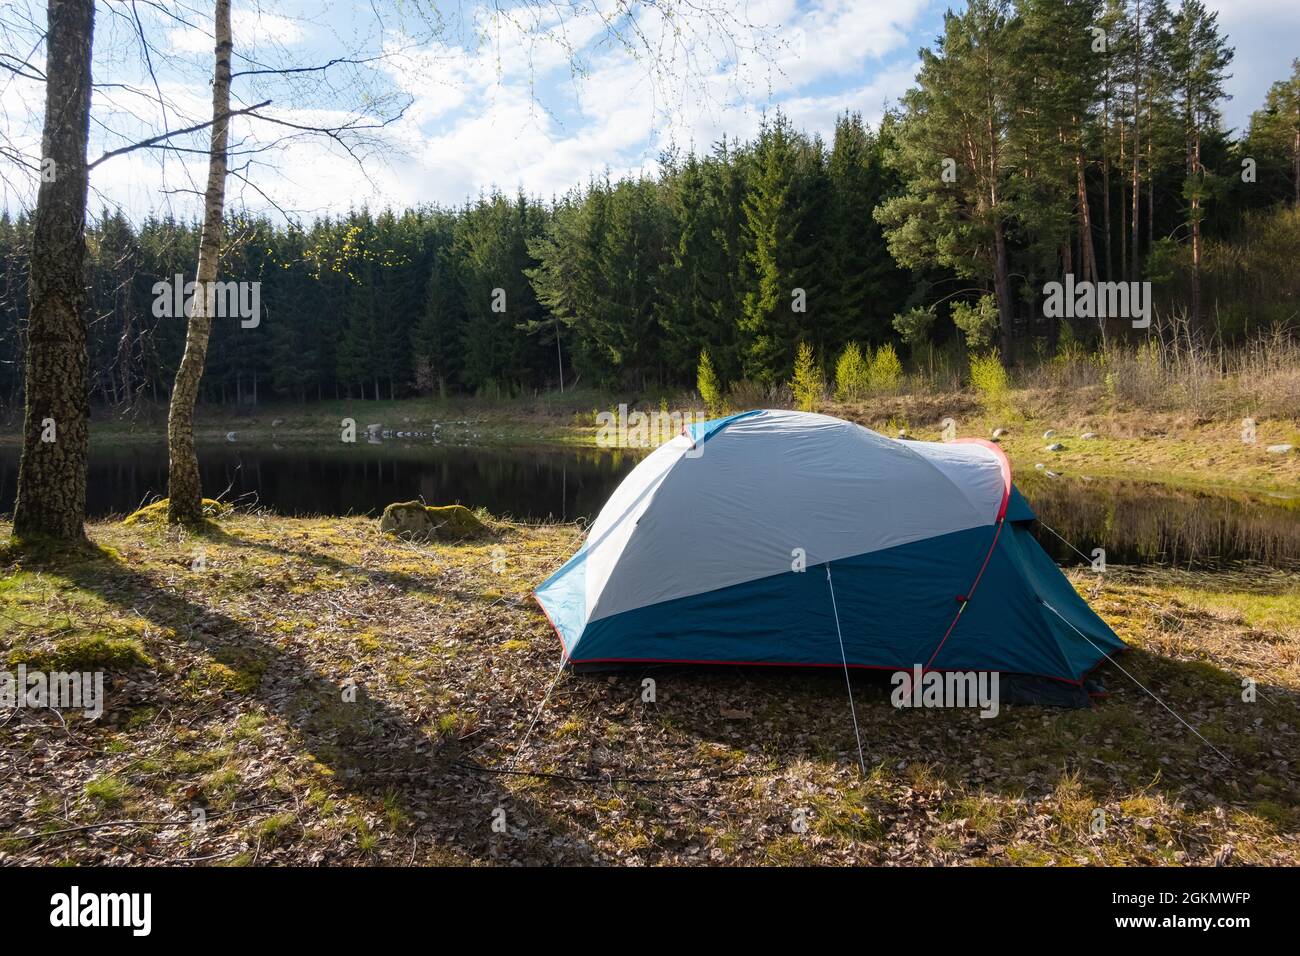 Camping-Zelt in der Nähe des Sees im Wald aufgestellt. Entspannung auf  einem Campingplatz im Freien Stockfotografie - Alamy